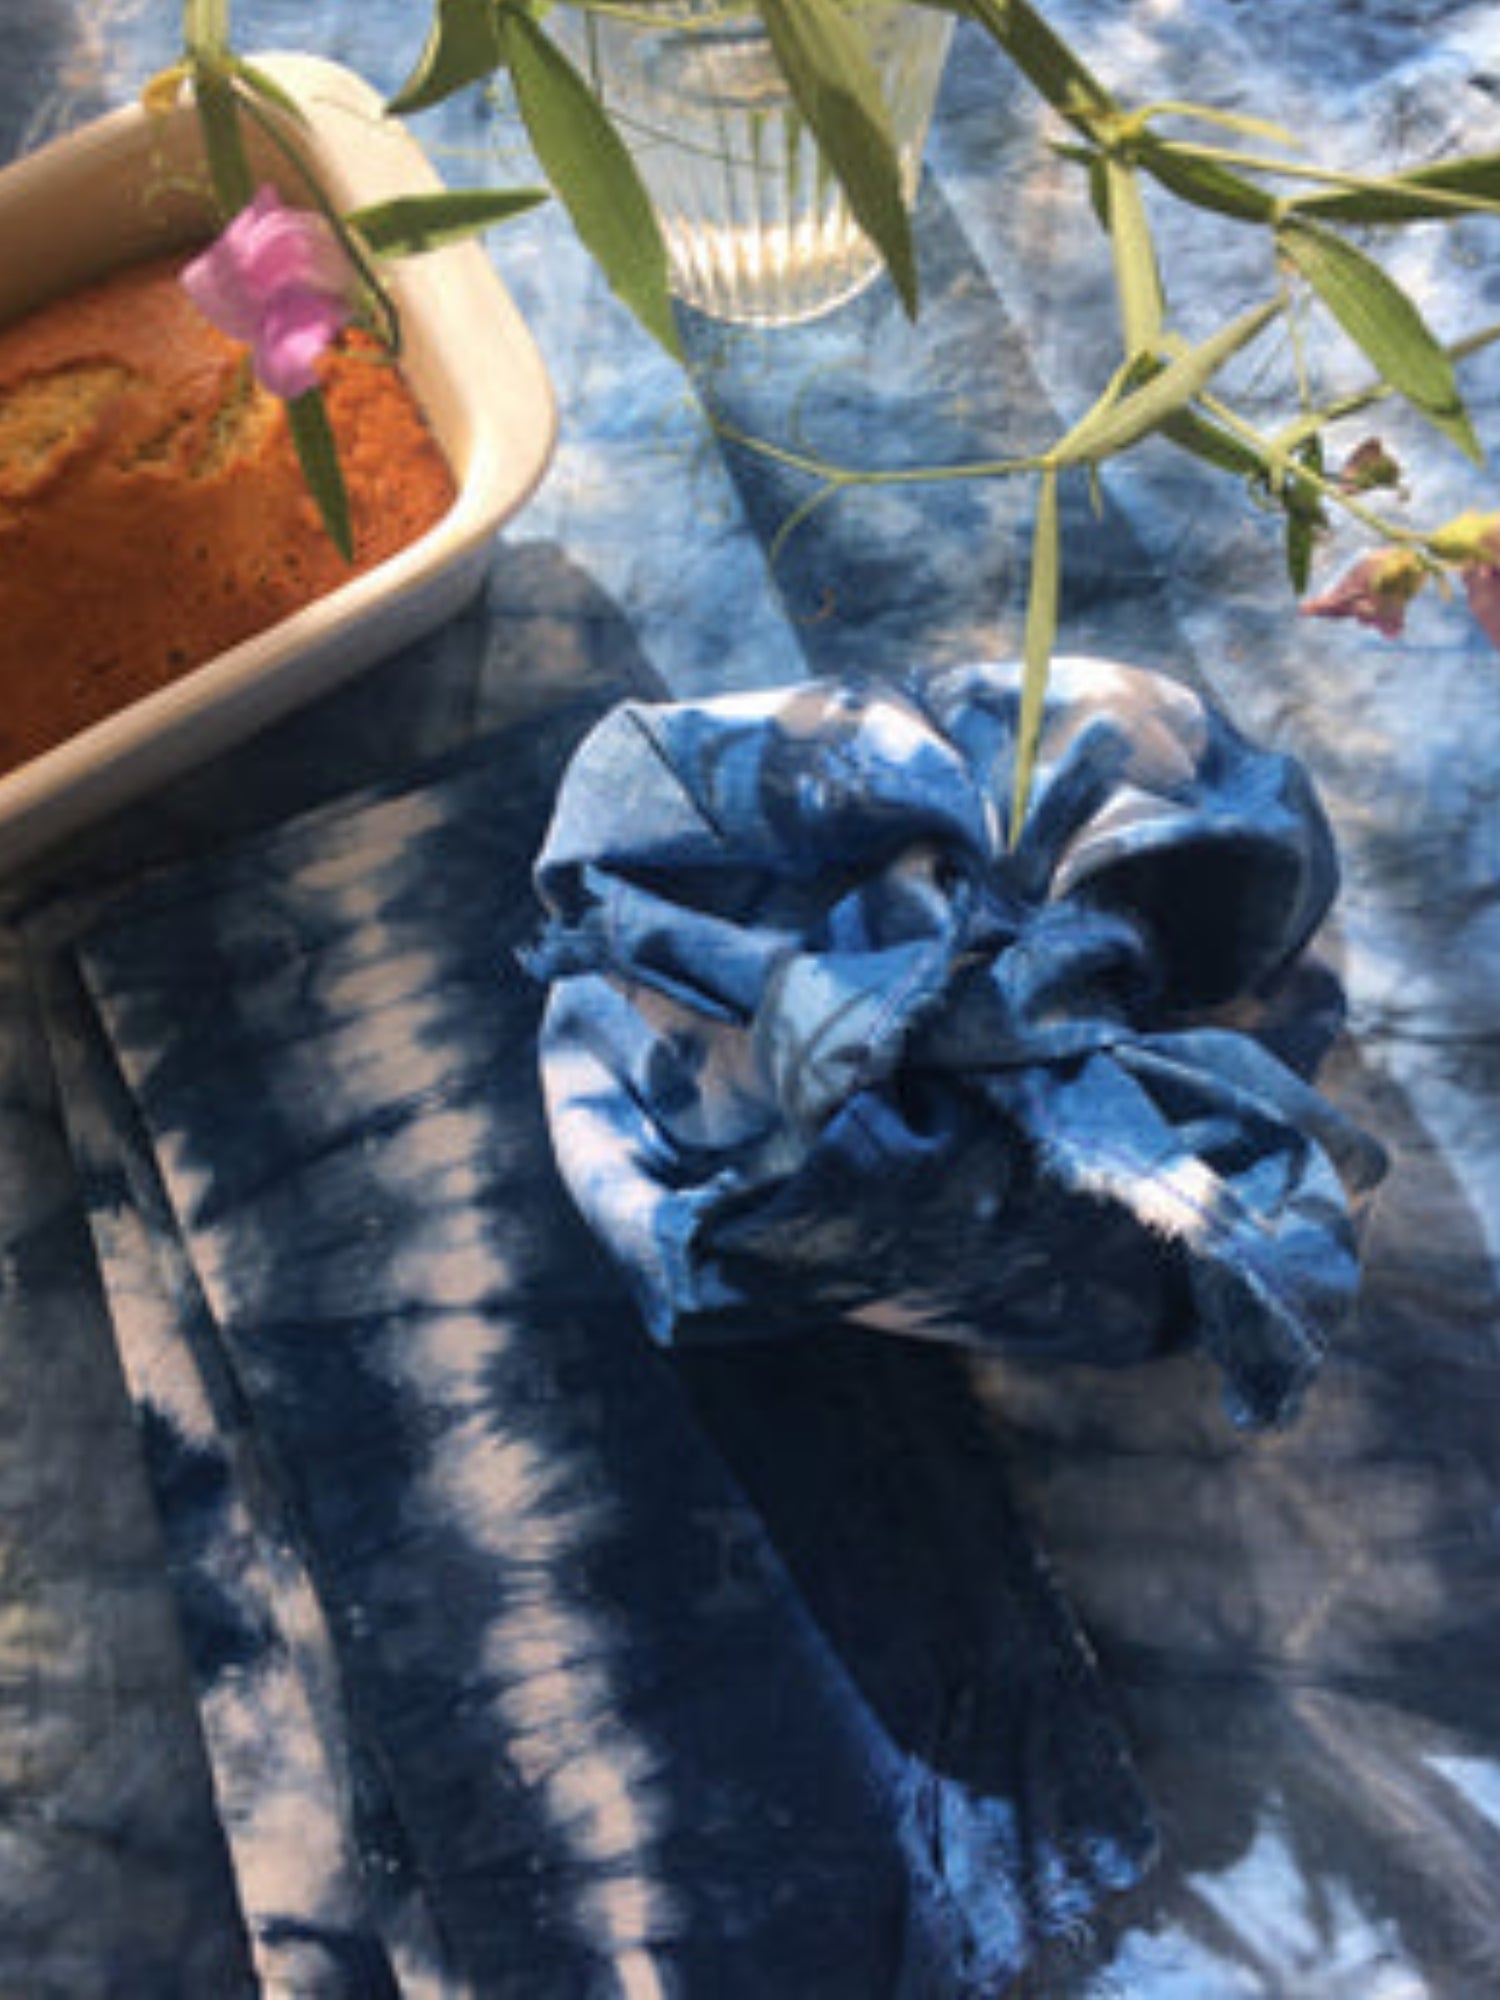 Iris' indigo tie-dyed lunch cloths